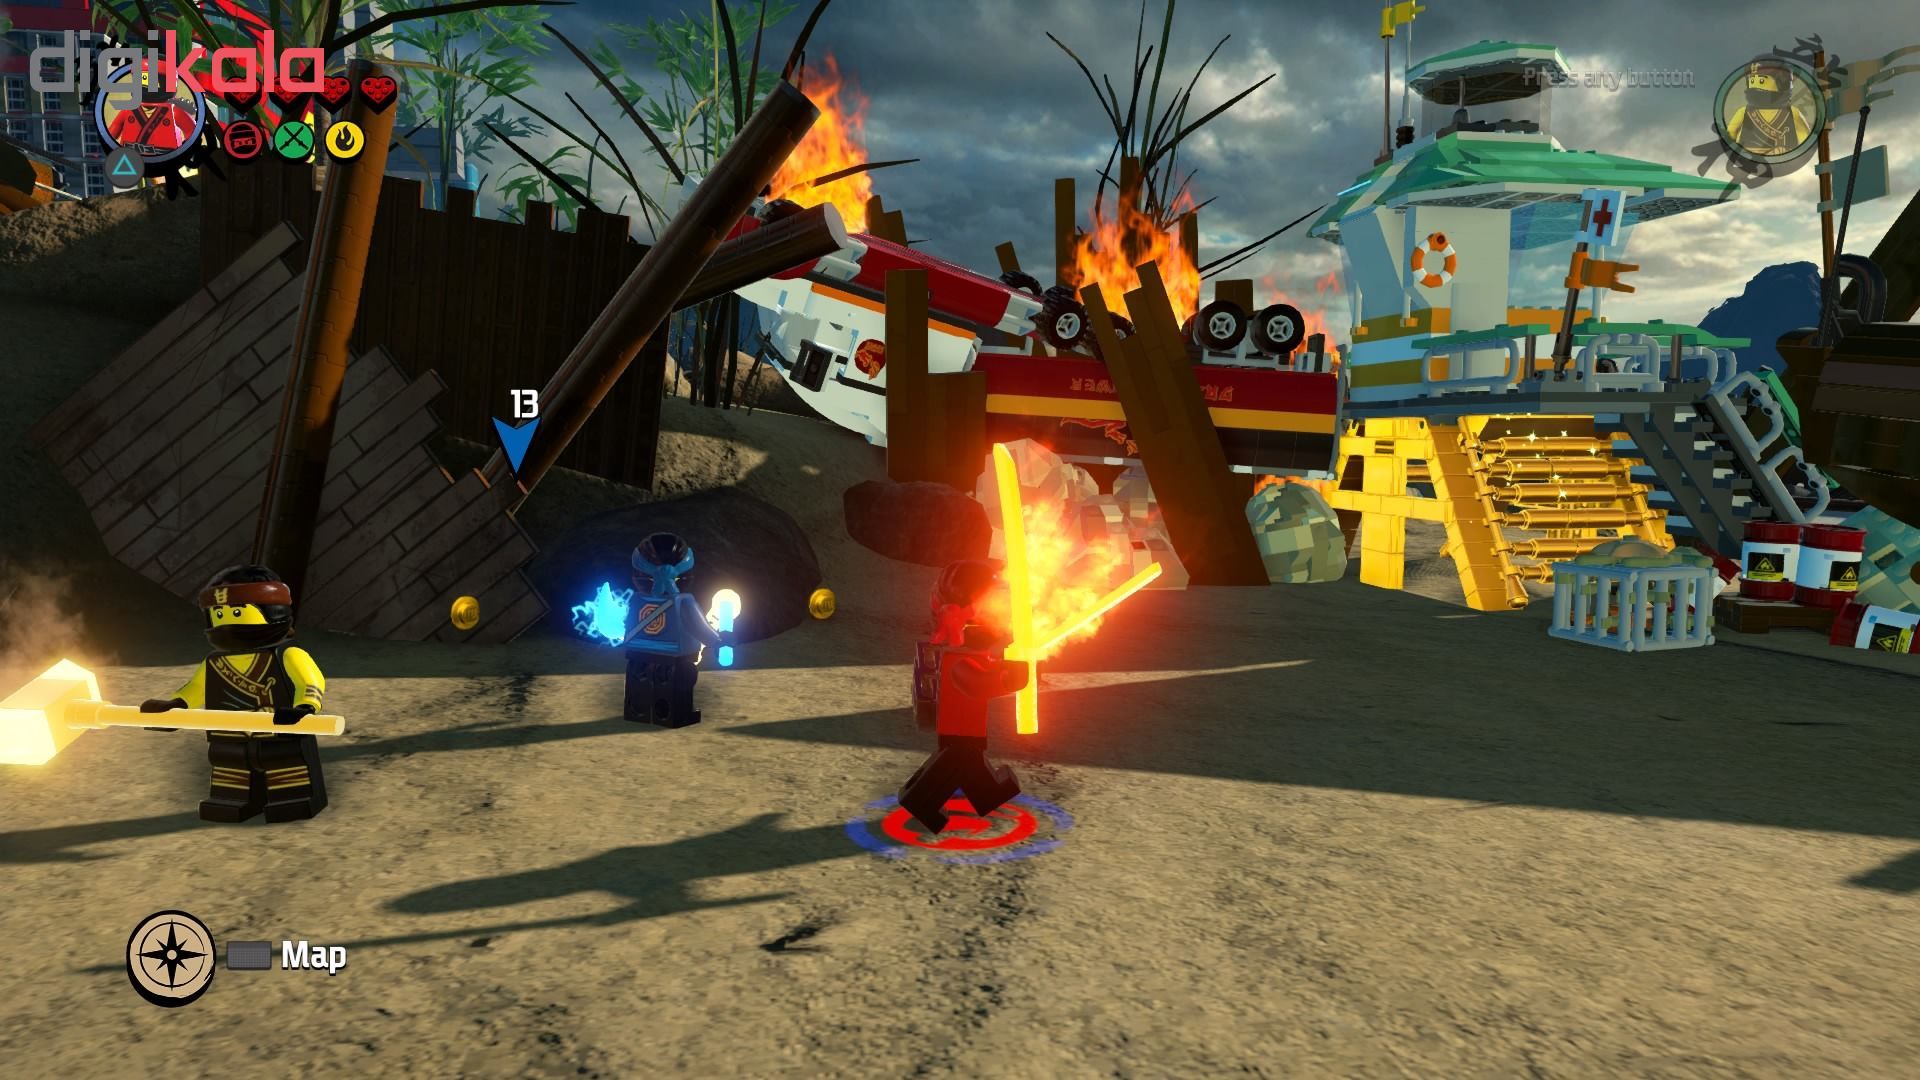 بازی Lego The Ninjago Movie Video Game مخصوص PS4